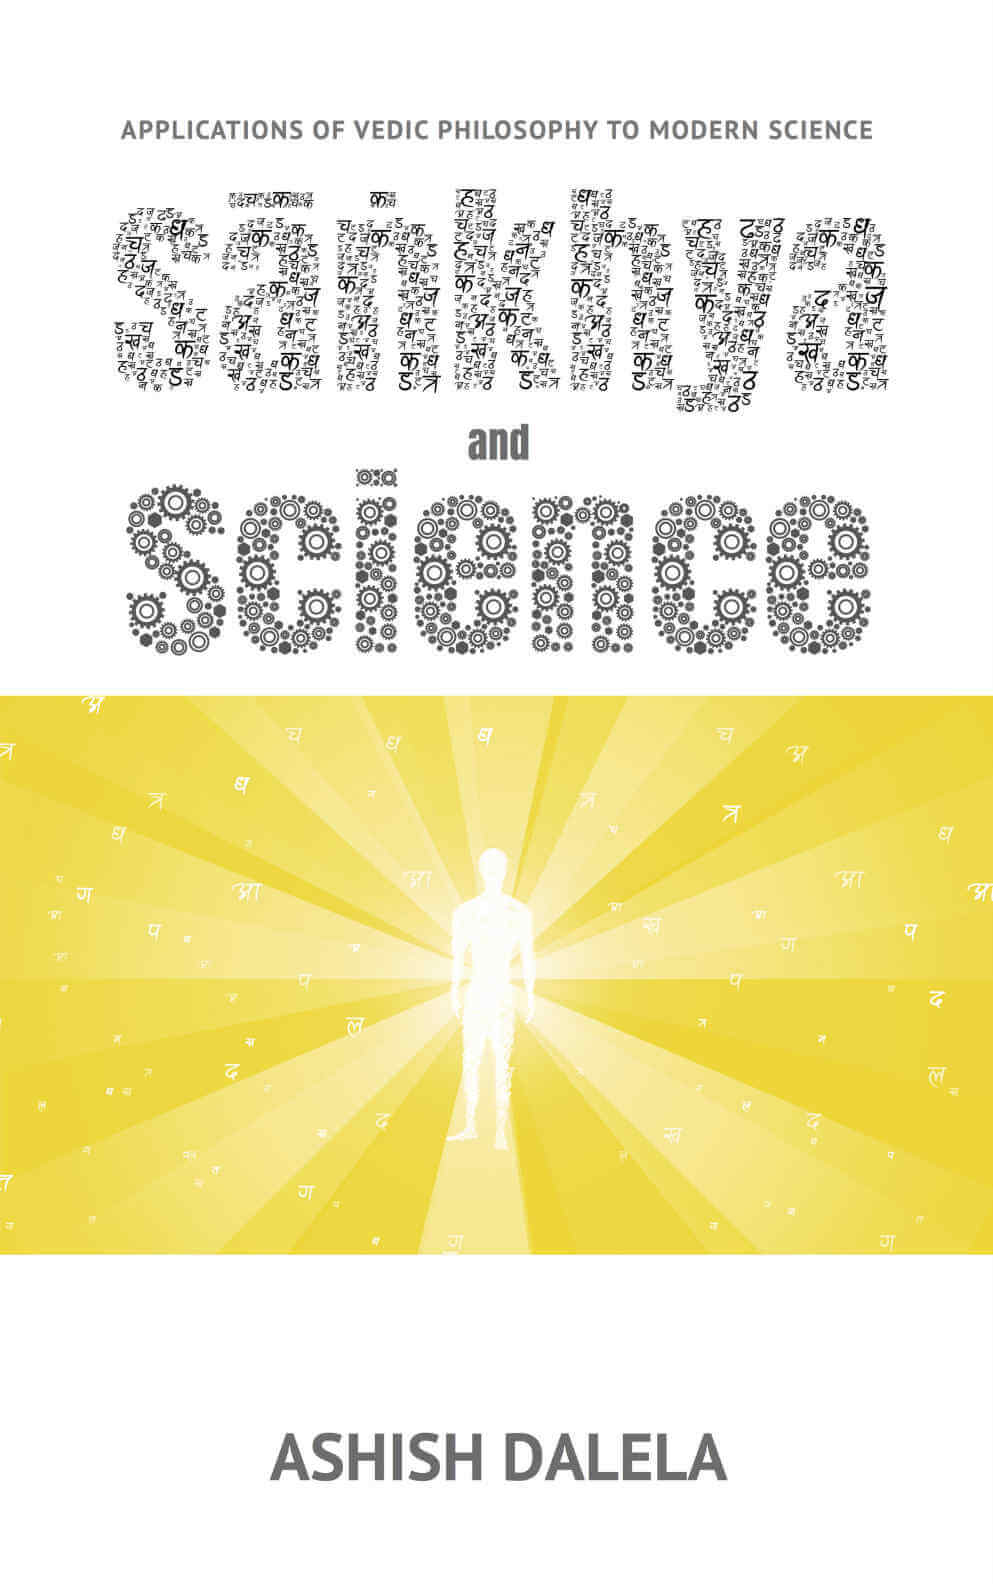 Sankhya 与科学：吠陀哲学在现代科学中的应用